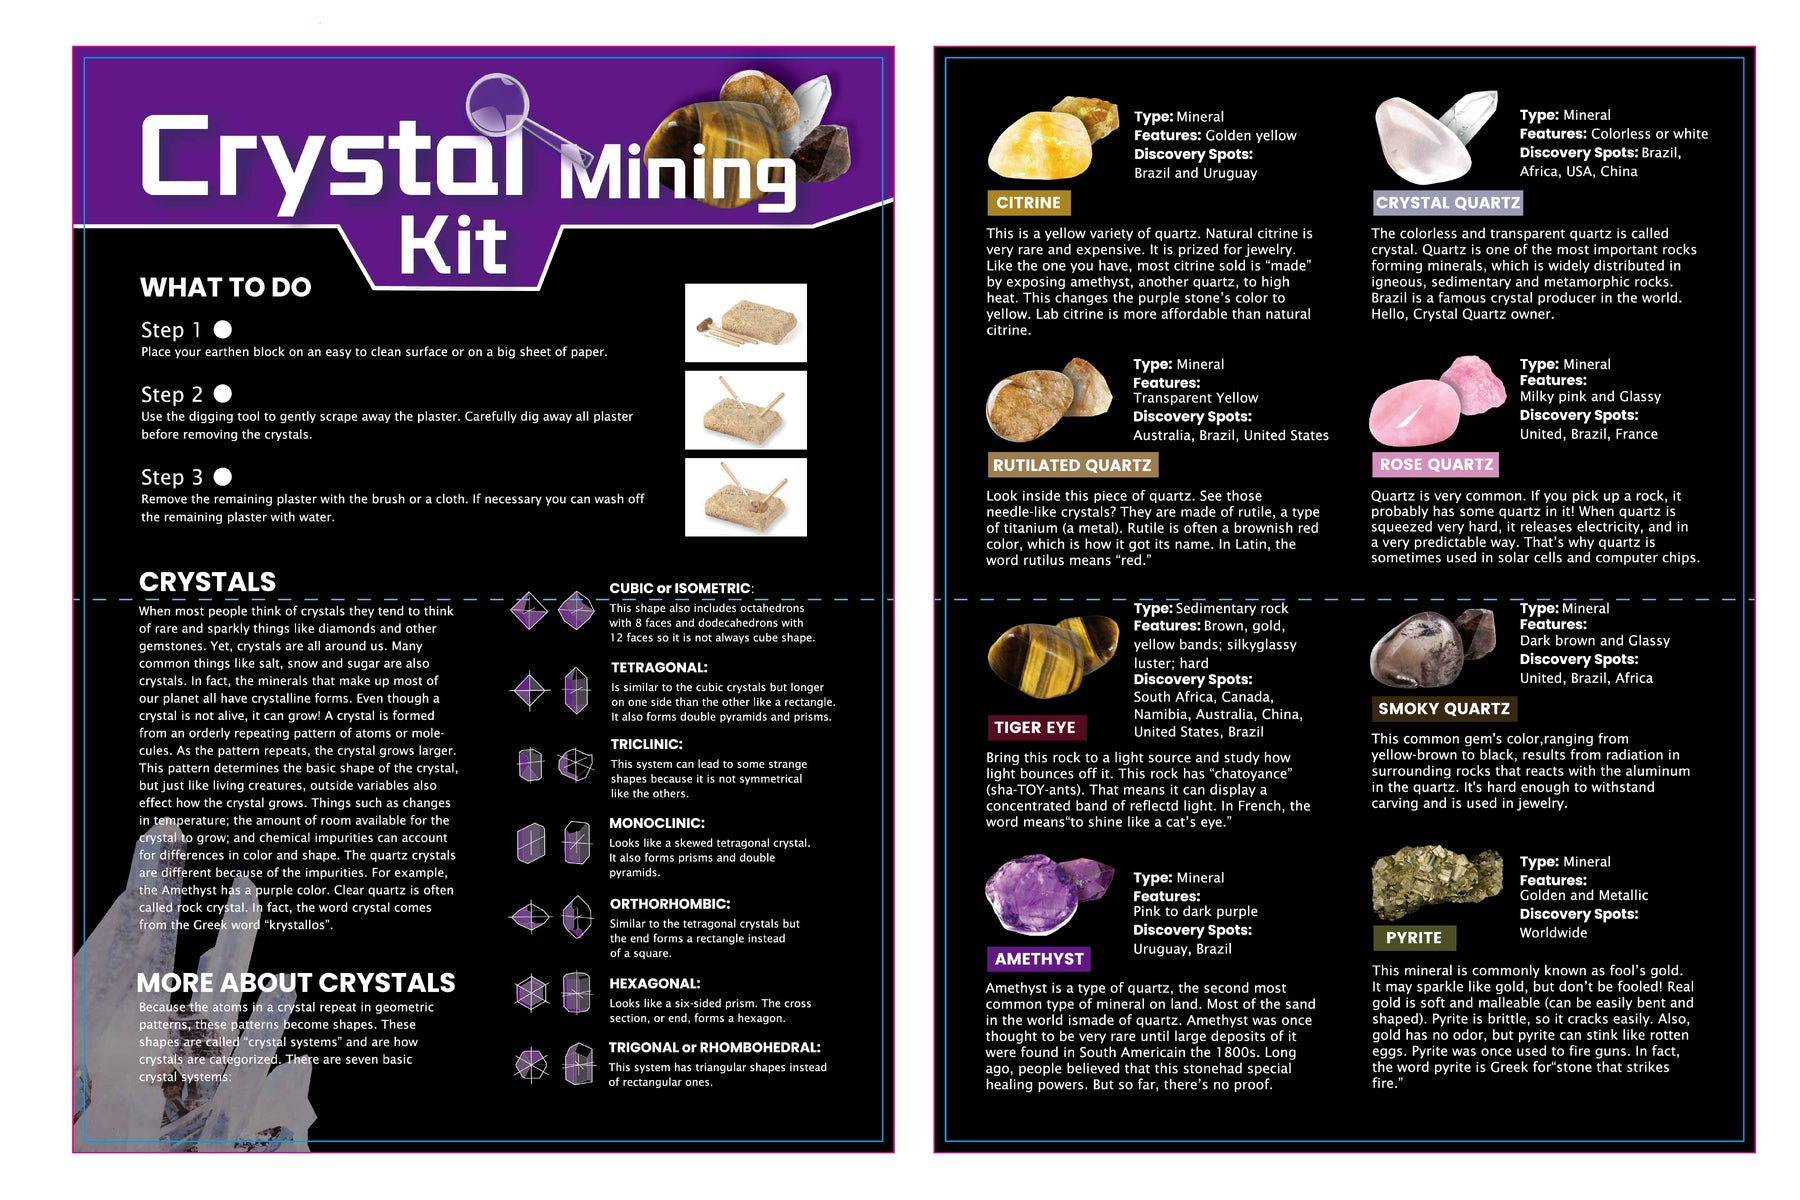 Dig & Discover Crystal Mining Kit - Kids Mega Mart